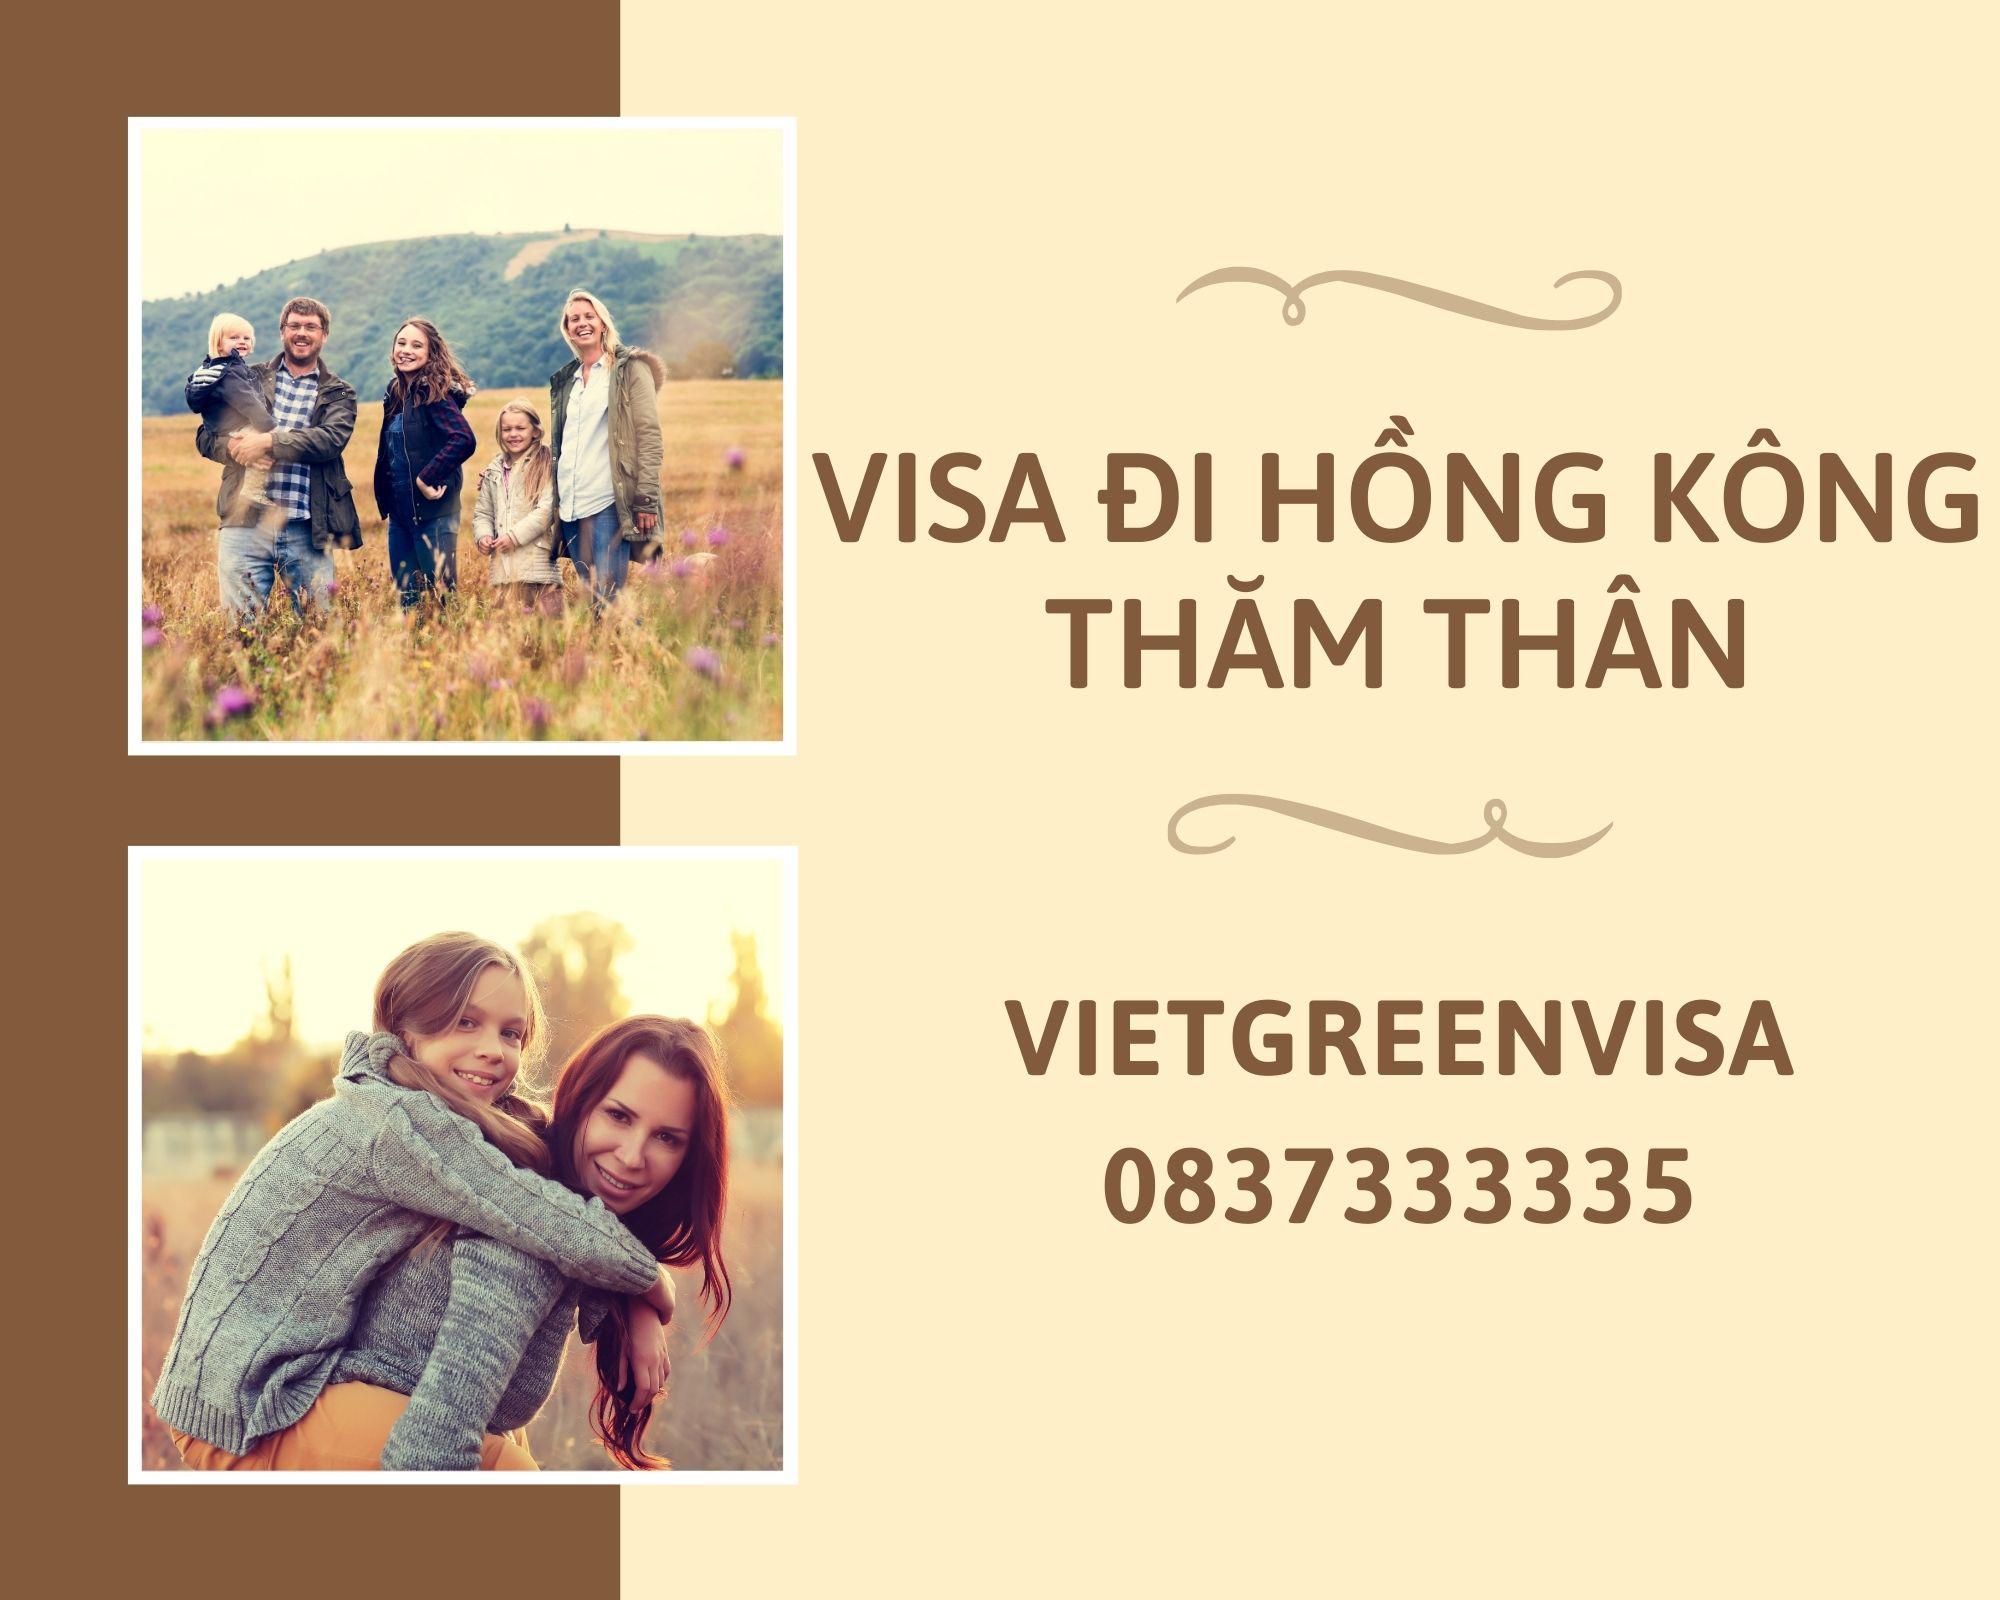 Dịch vụ xin visa thăm thân Hồng Kông uy tín, Thủ tục làm visa Hồng Kông thăm thân, Xin visa Hồng Kông thăm thân, visa đi Hồng Kông